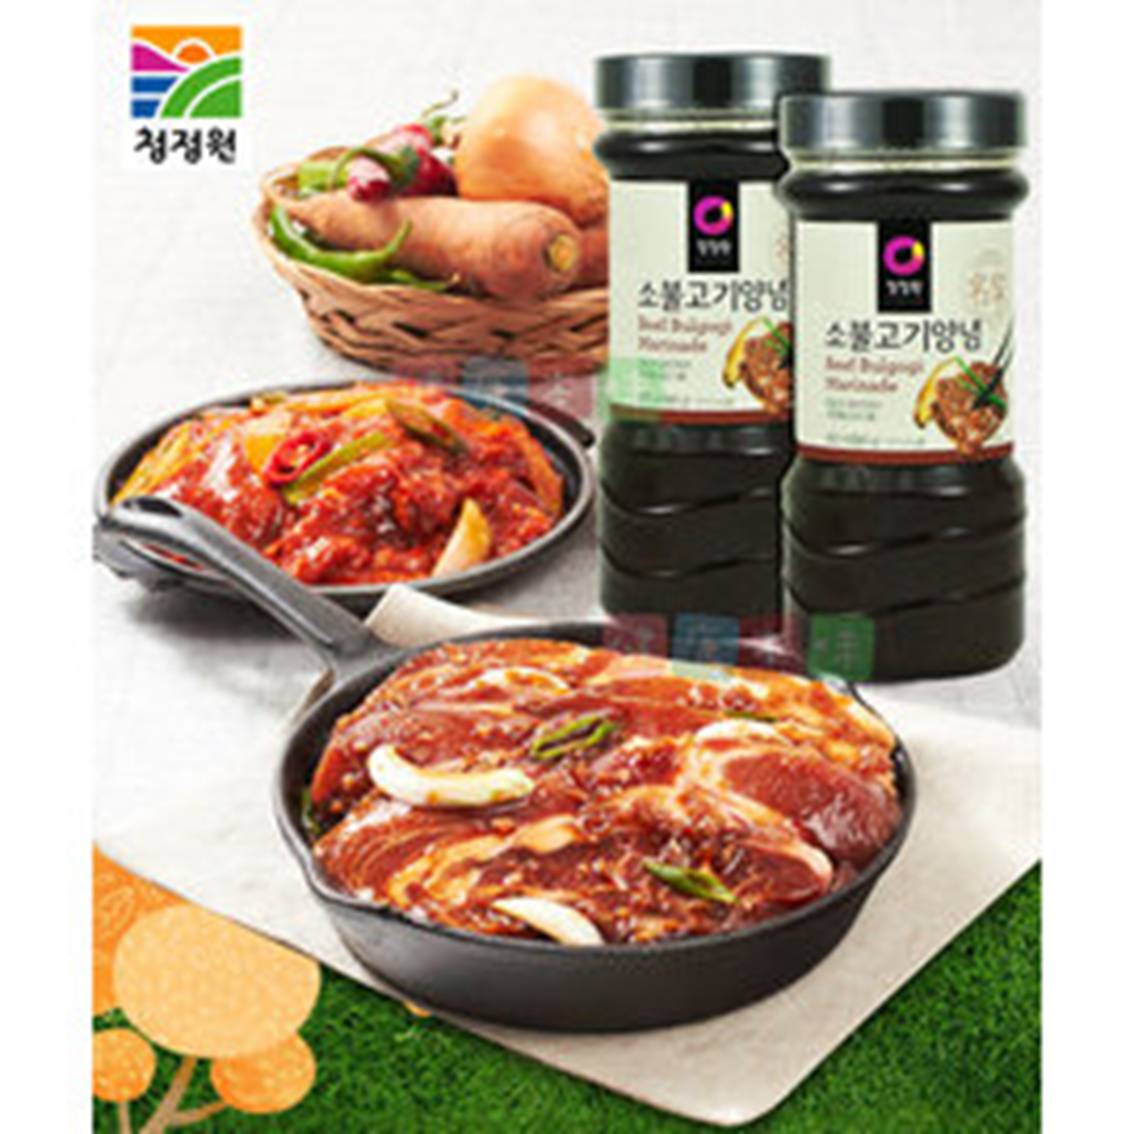 韓國CJ韓式頂級水梨蘋果燒醃烤醬 烤肉醬 燒肉醬